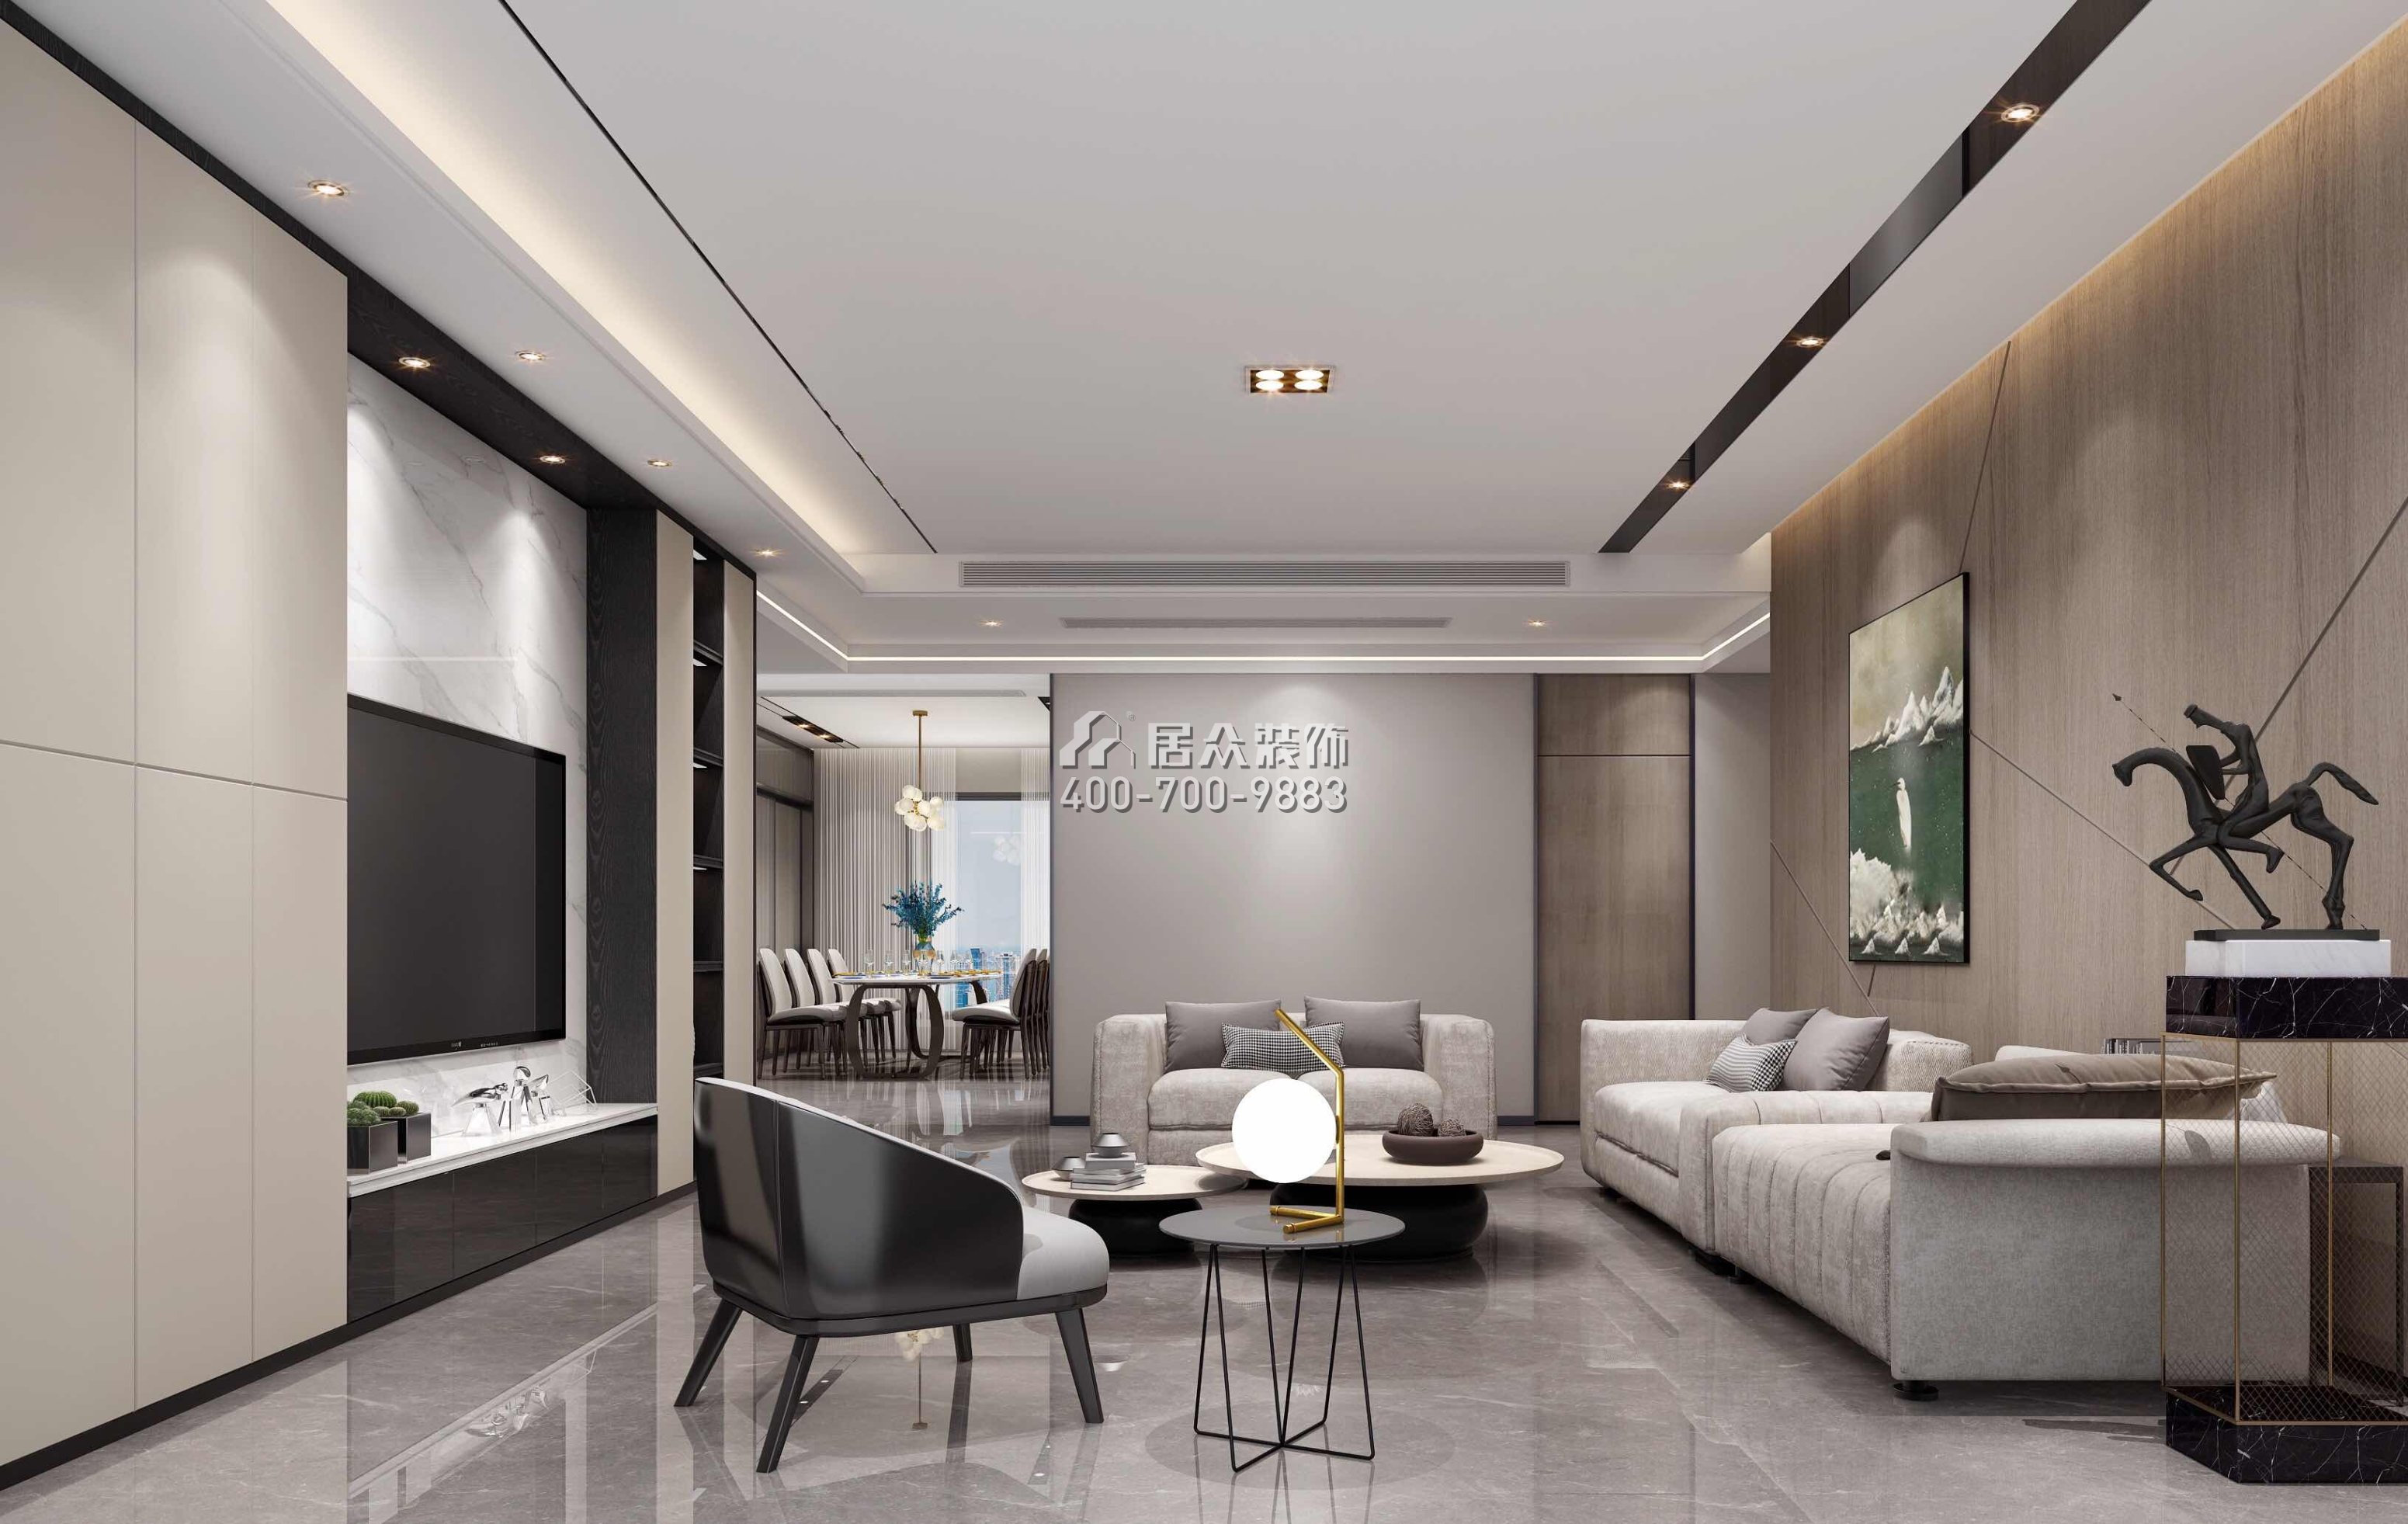 達鑫江濱新城250平方米現代簡約風格平層戶型客廳裝修效果圖